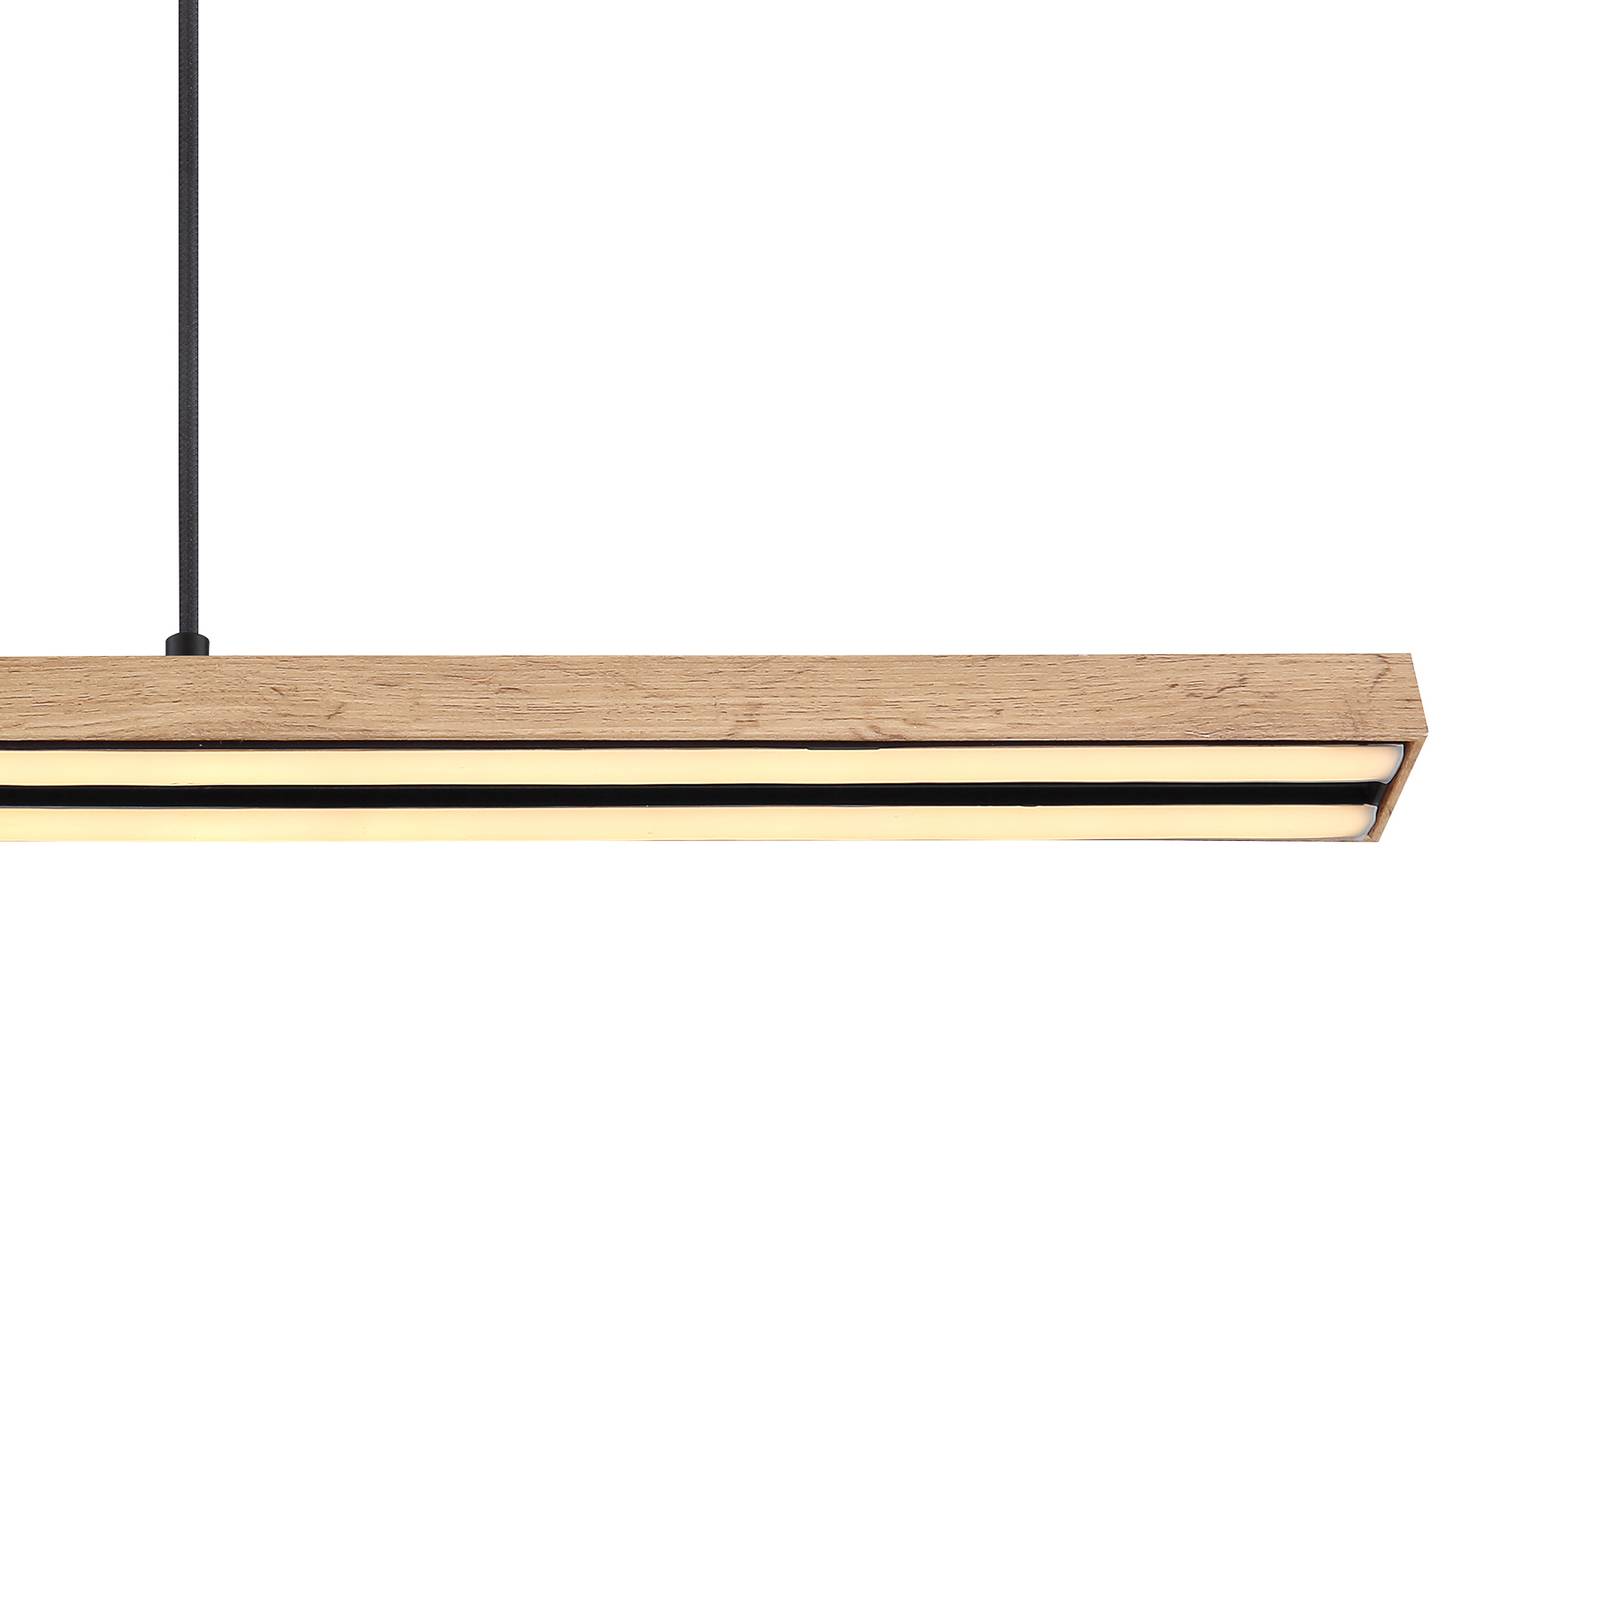 Globo Závěsné svítidlo Doro LED, délka 101,5 cm, dub, dřevo